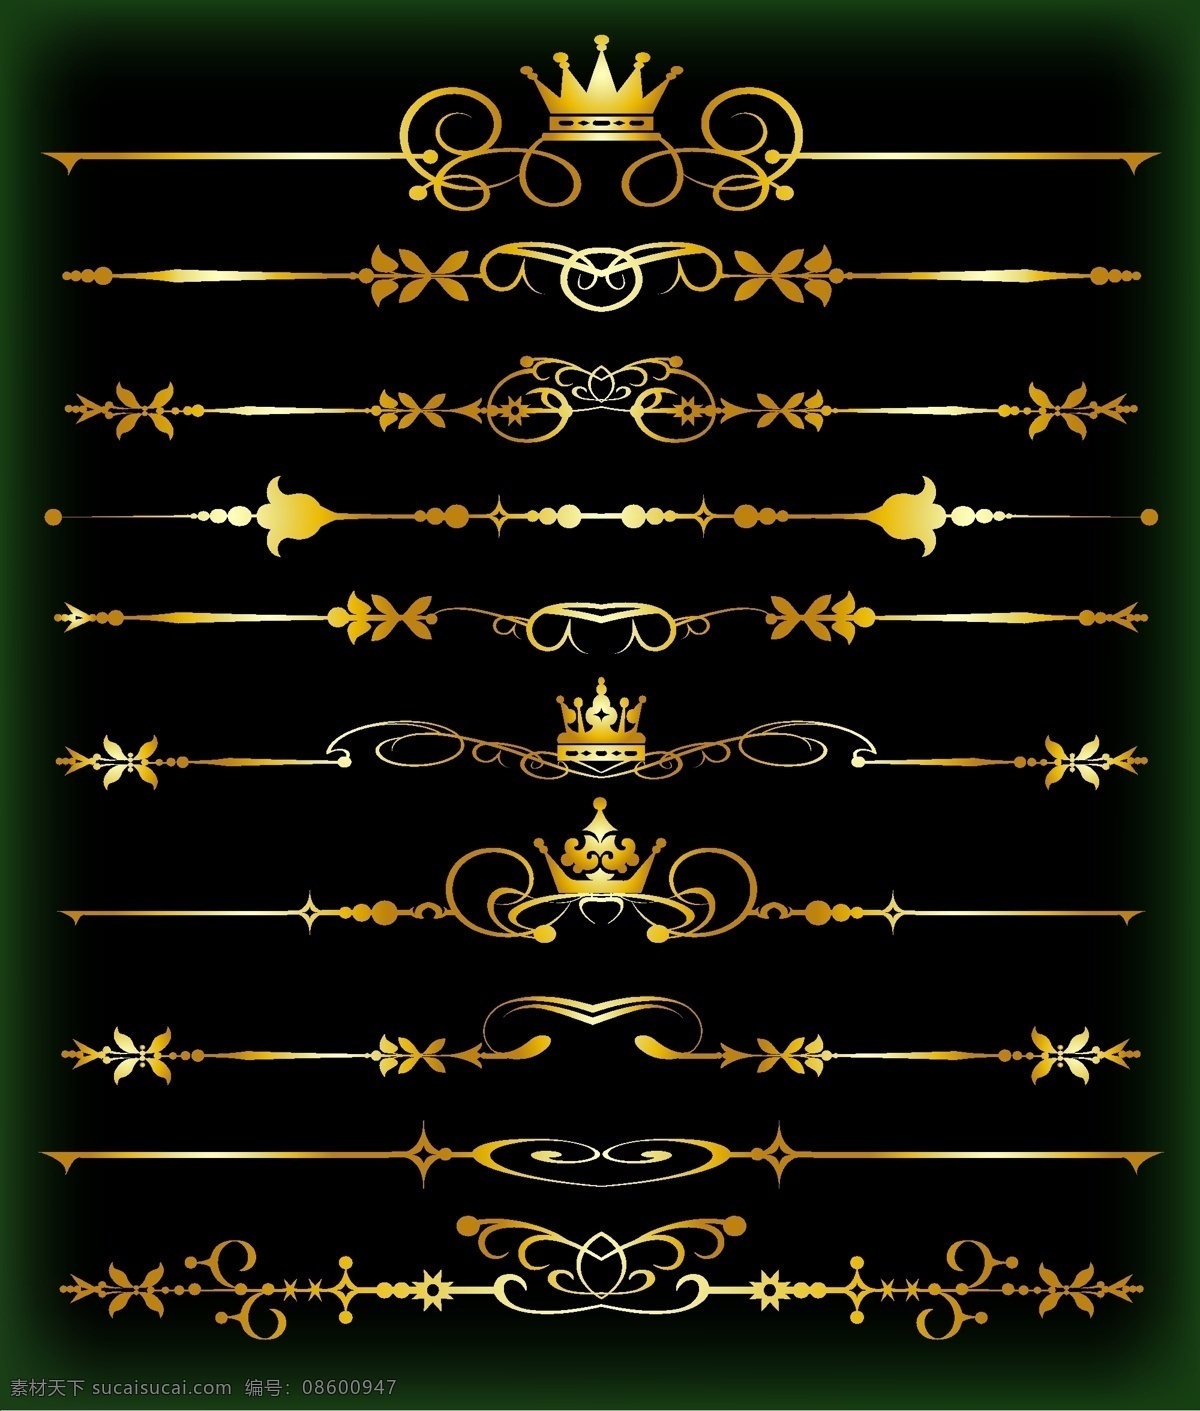 典雅 皇冠 分界线 网页设计 标签 金色 矢量素材 设计素材 流线